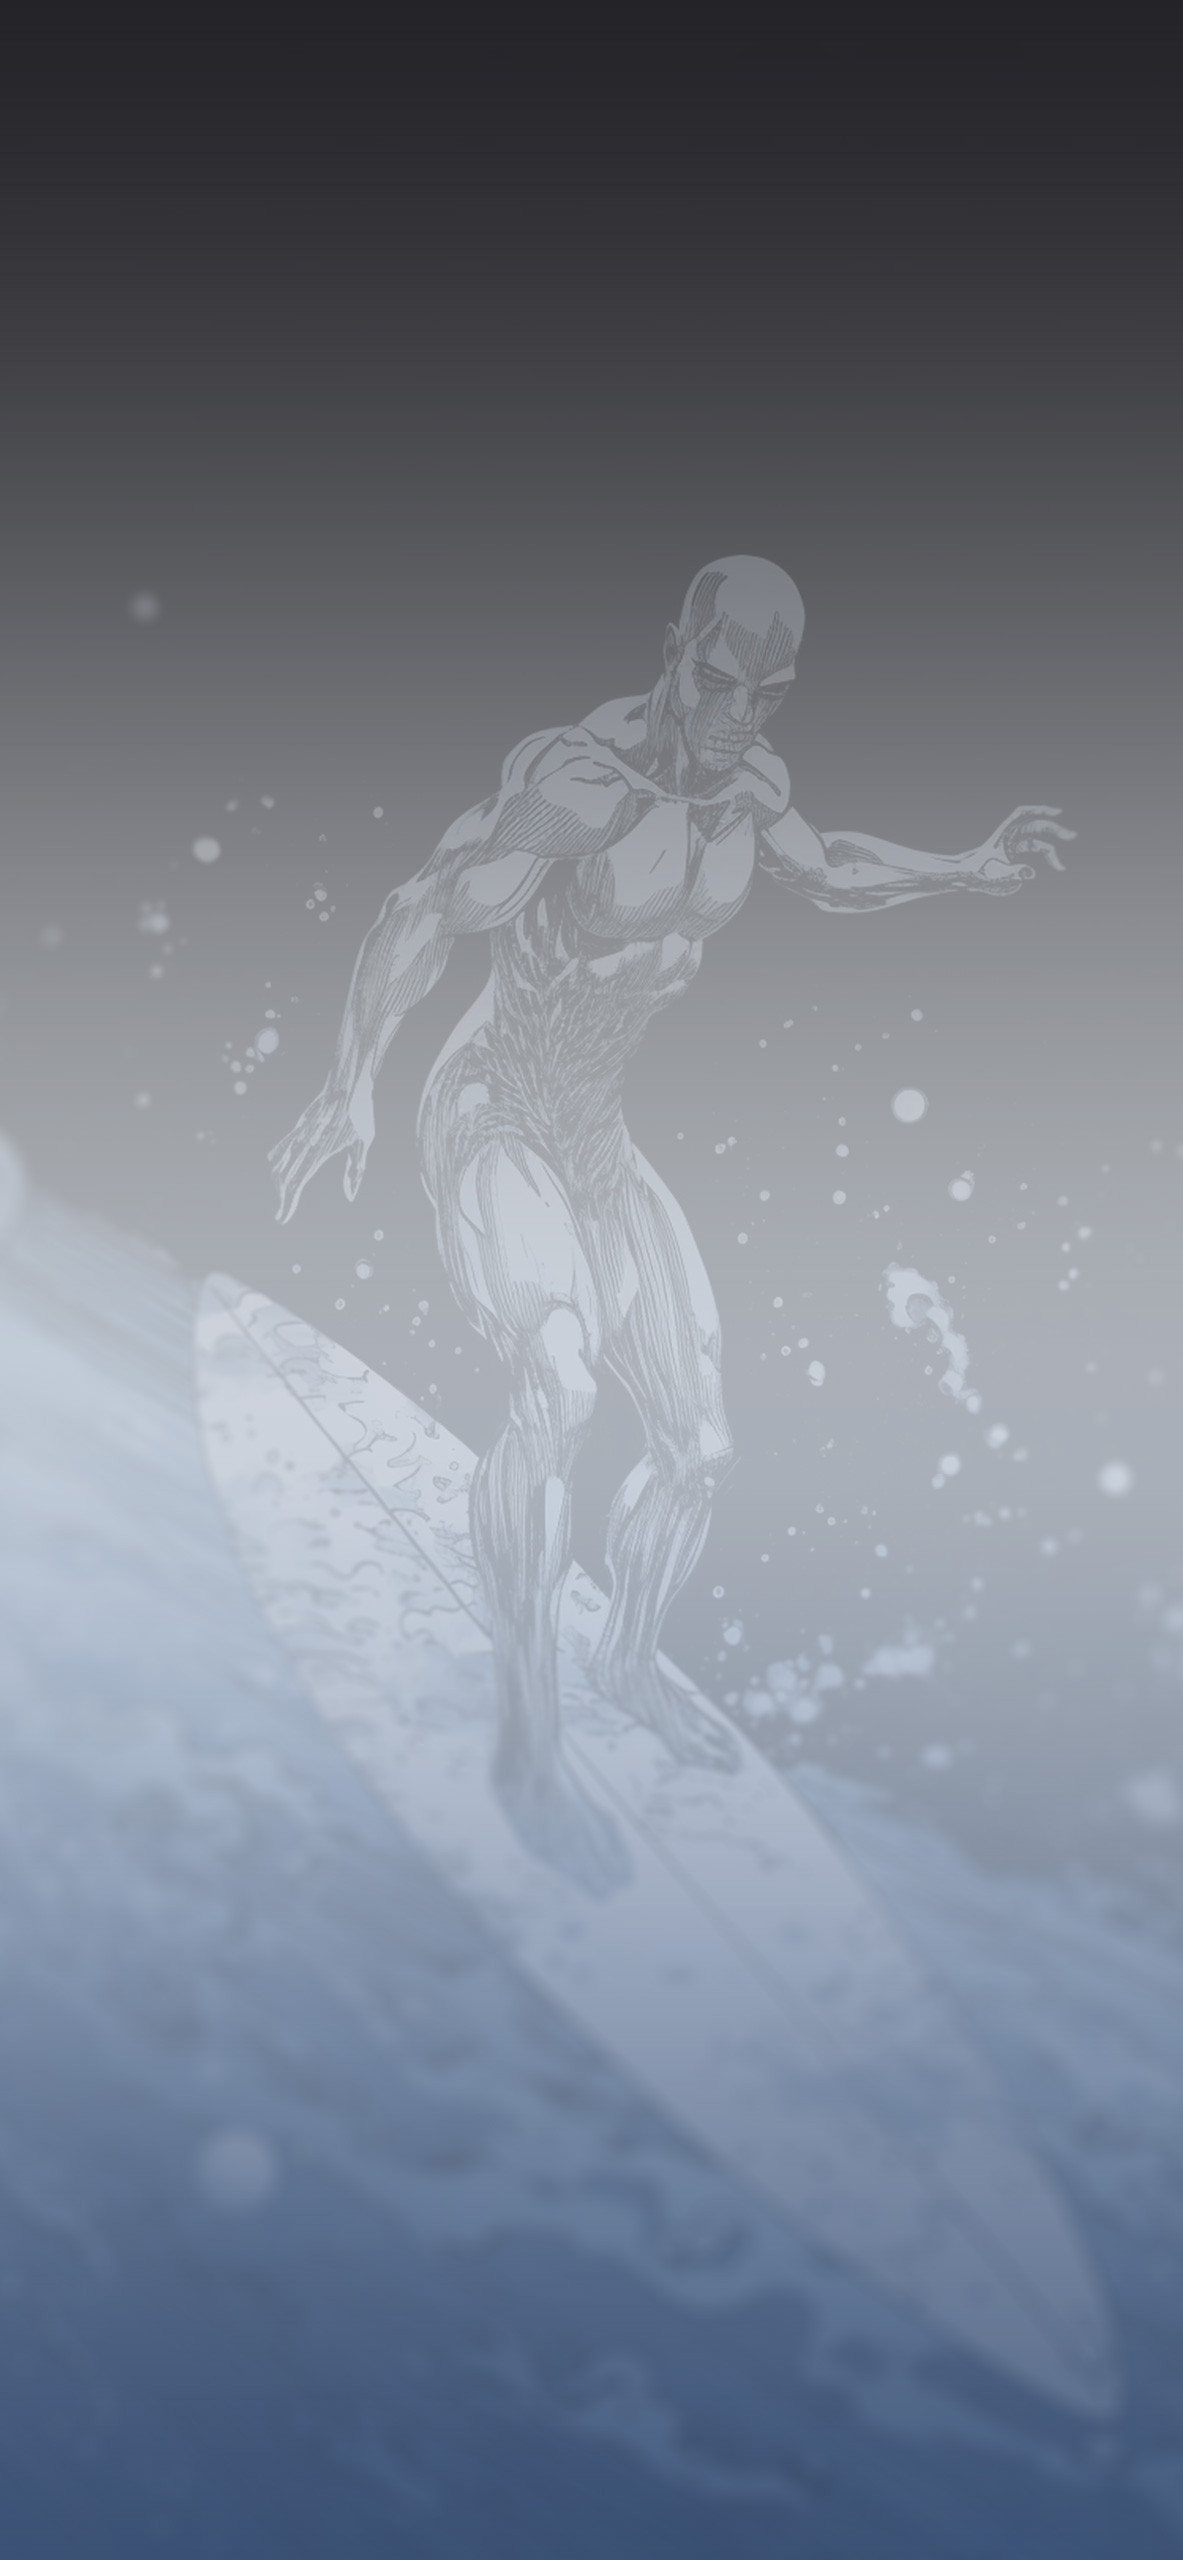 marvel silver surfer comics background